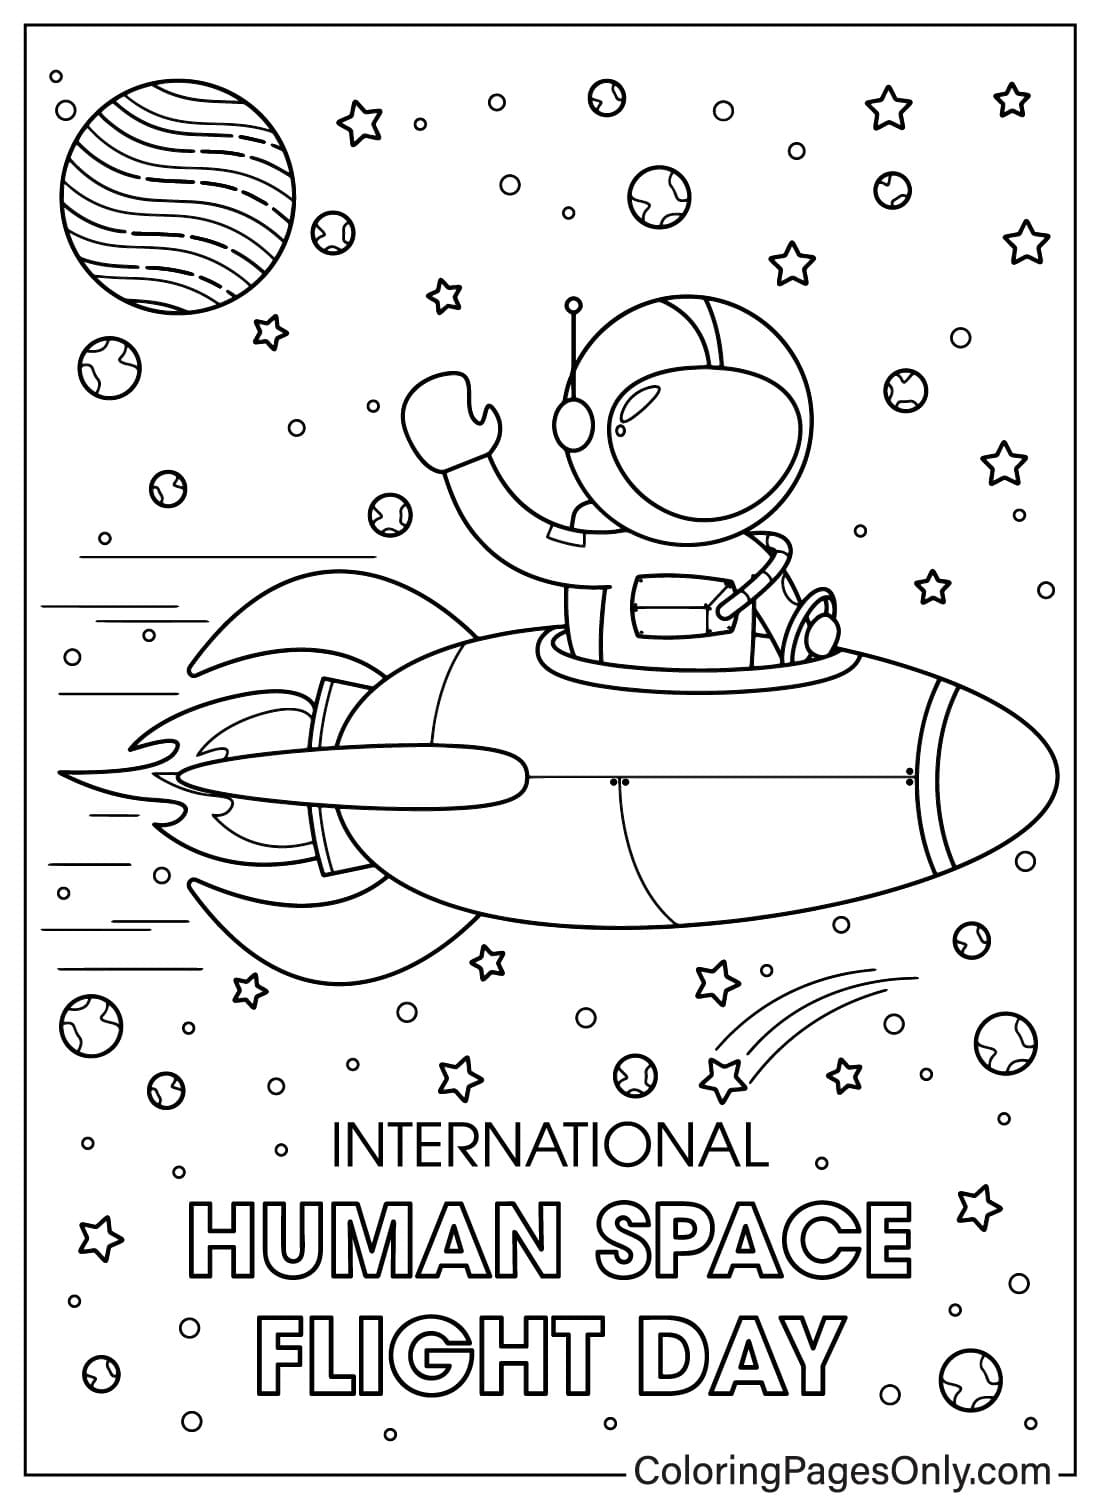 صفحات تلوين اليوم الدولي لرحلات الإنسان إلى الفضاء يمكن تنزيلها من اليوم الدولي لرحلات الإنسان إلى الفضاء